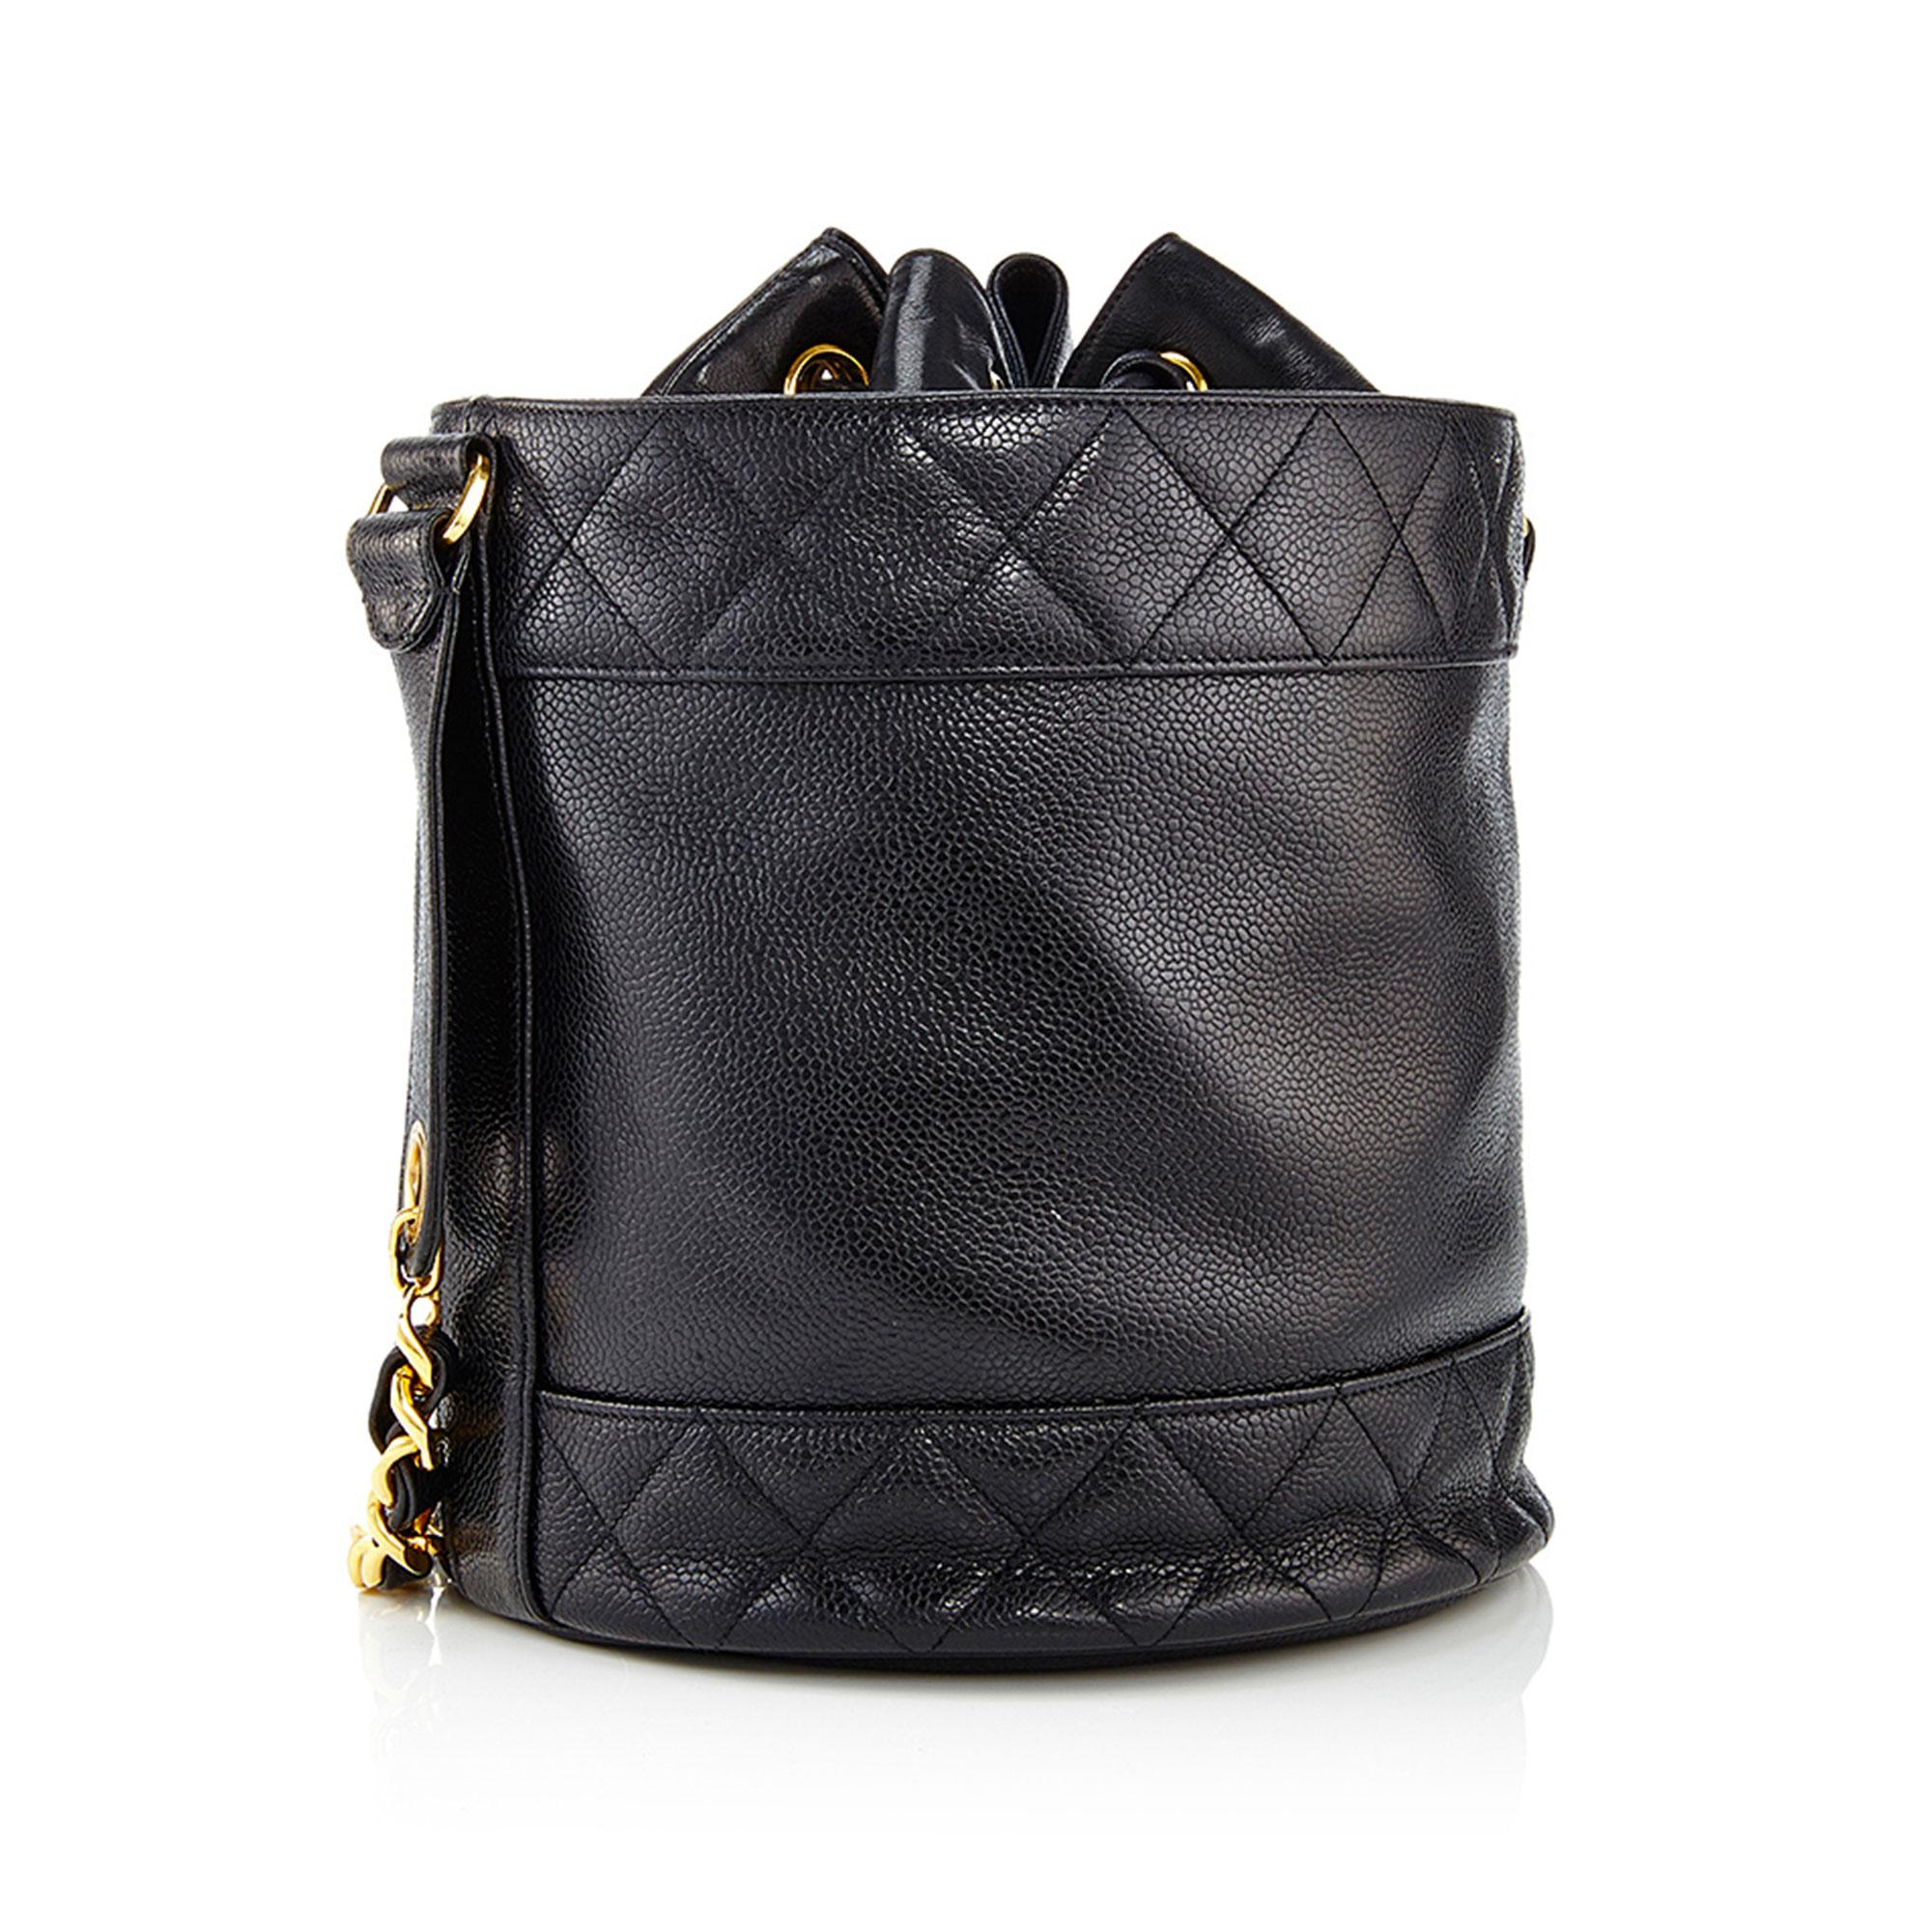 Women's or Men's Chanel 1991 Black Caviar Leather Vintage Drawstring Drum Shaped Shoulder Bag For Sale